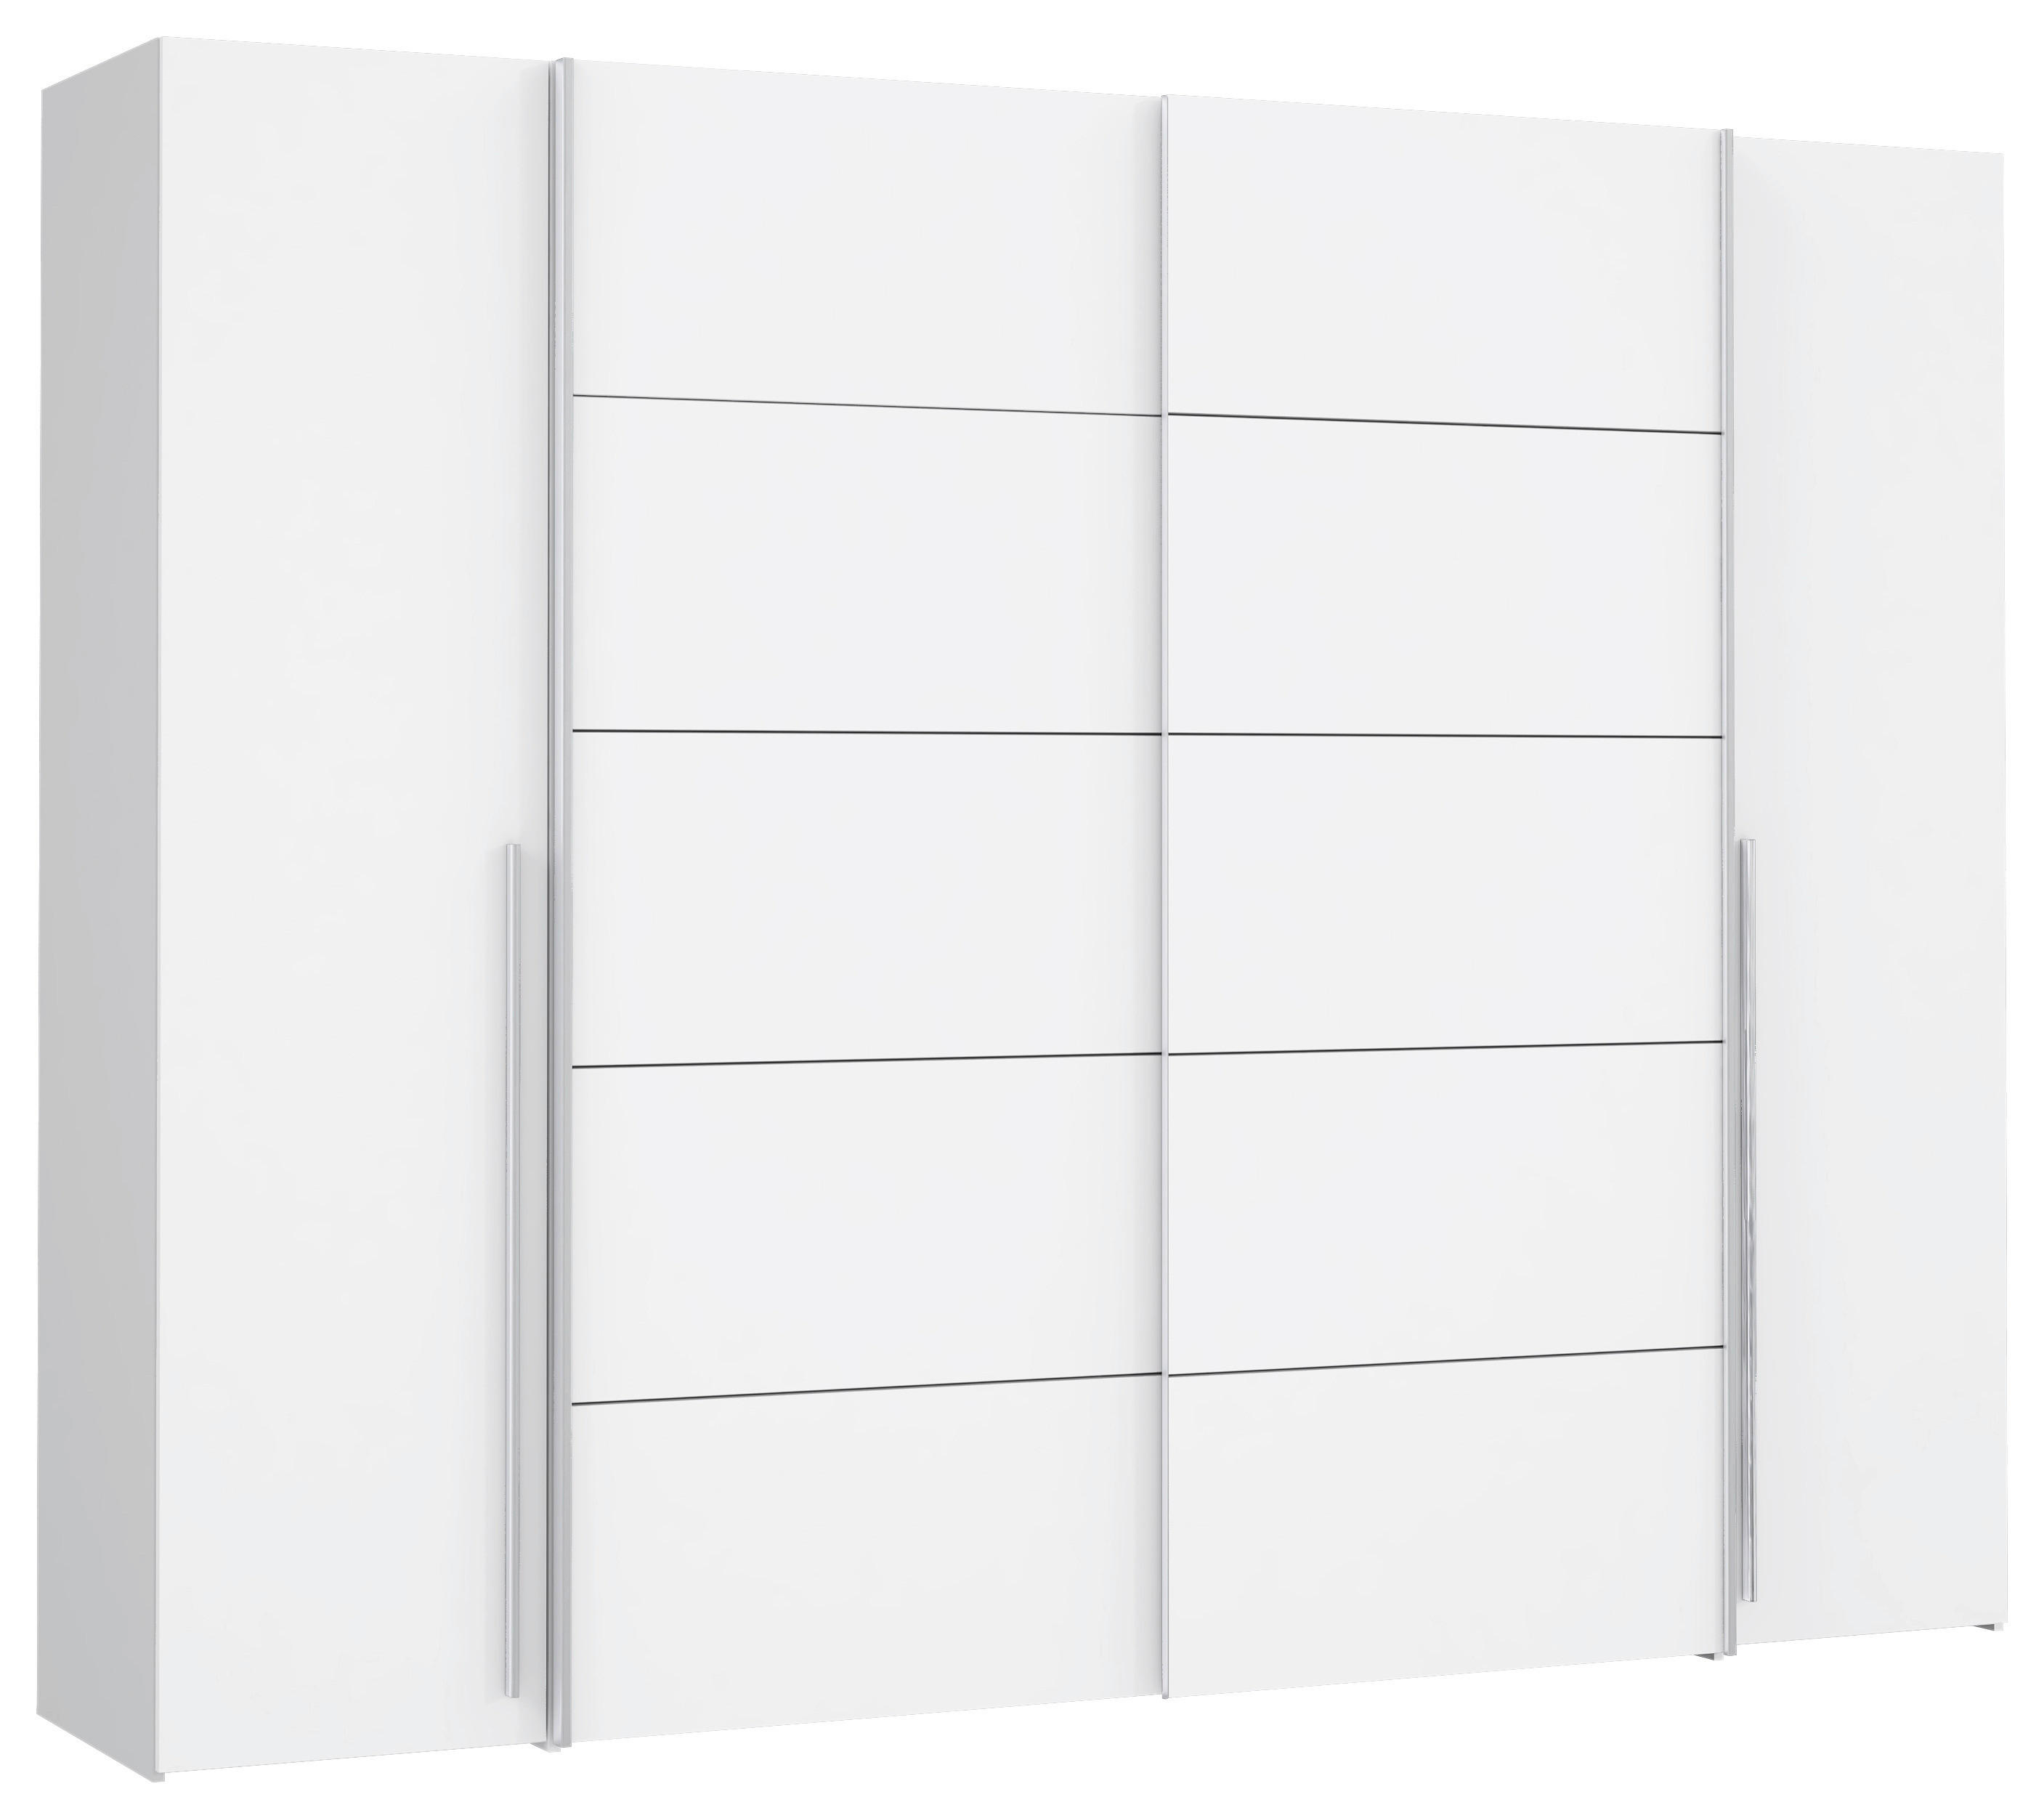 GARDEROB 270/210/61 cm 4-dörrar - vit/alufärgad, Modern, metall/träbaserade material (270/210/61cm) - MID.YOU